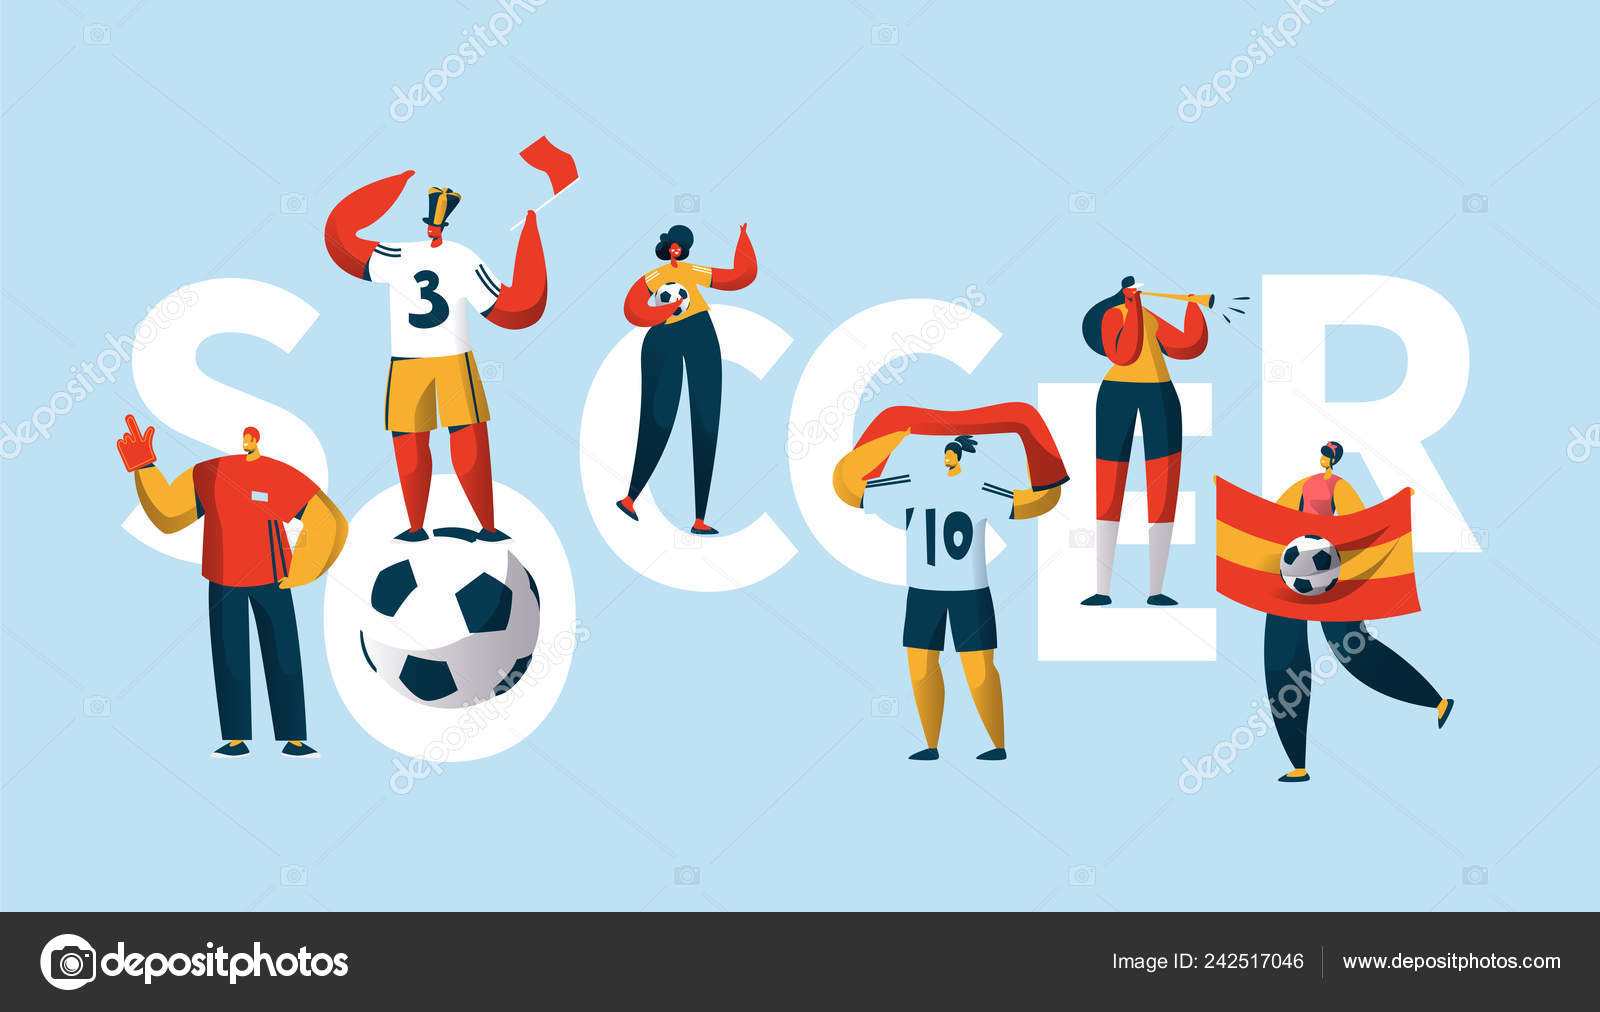 Ilustração plana de pessoas jogando futebol